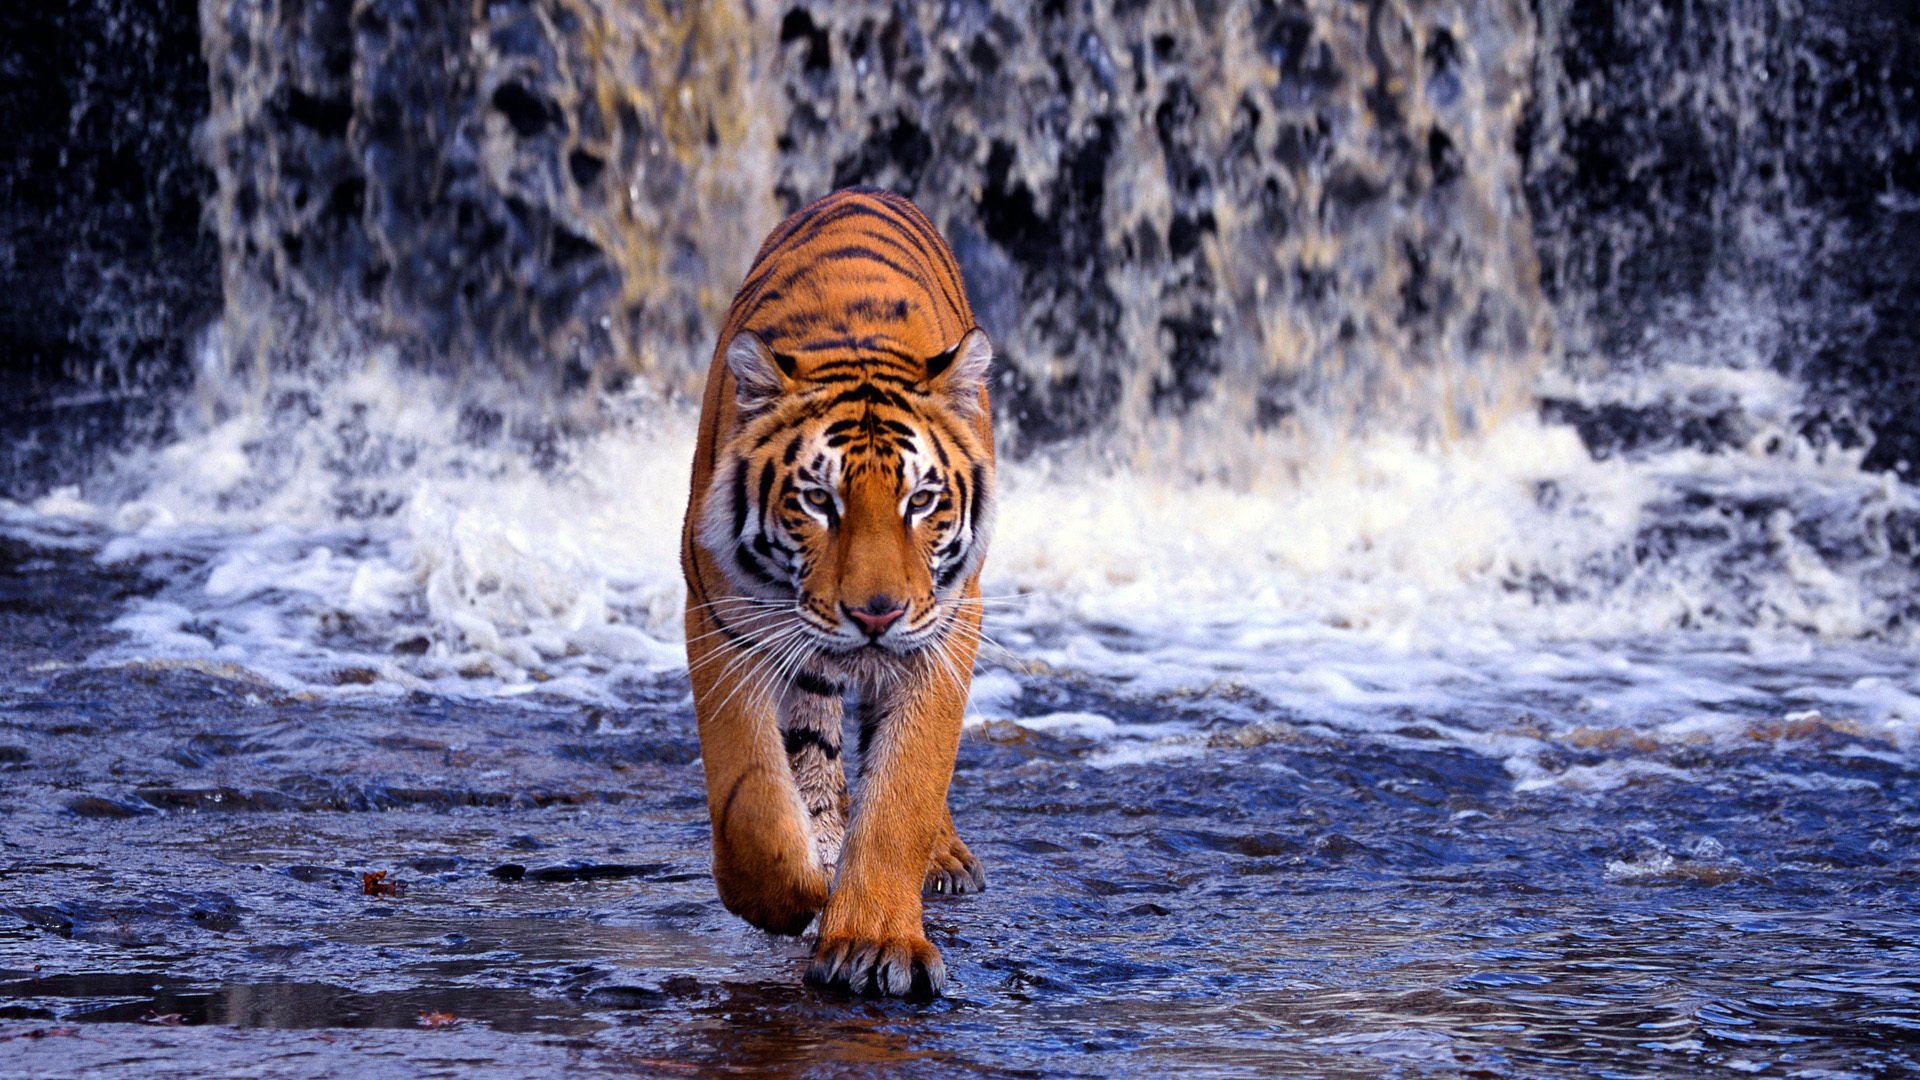 1080p Tiger Images Hd - HD Wallpaper 